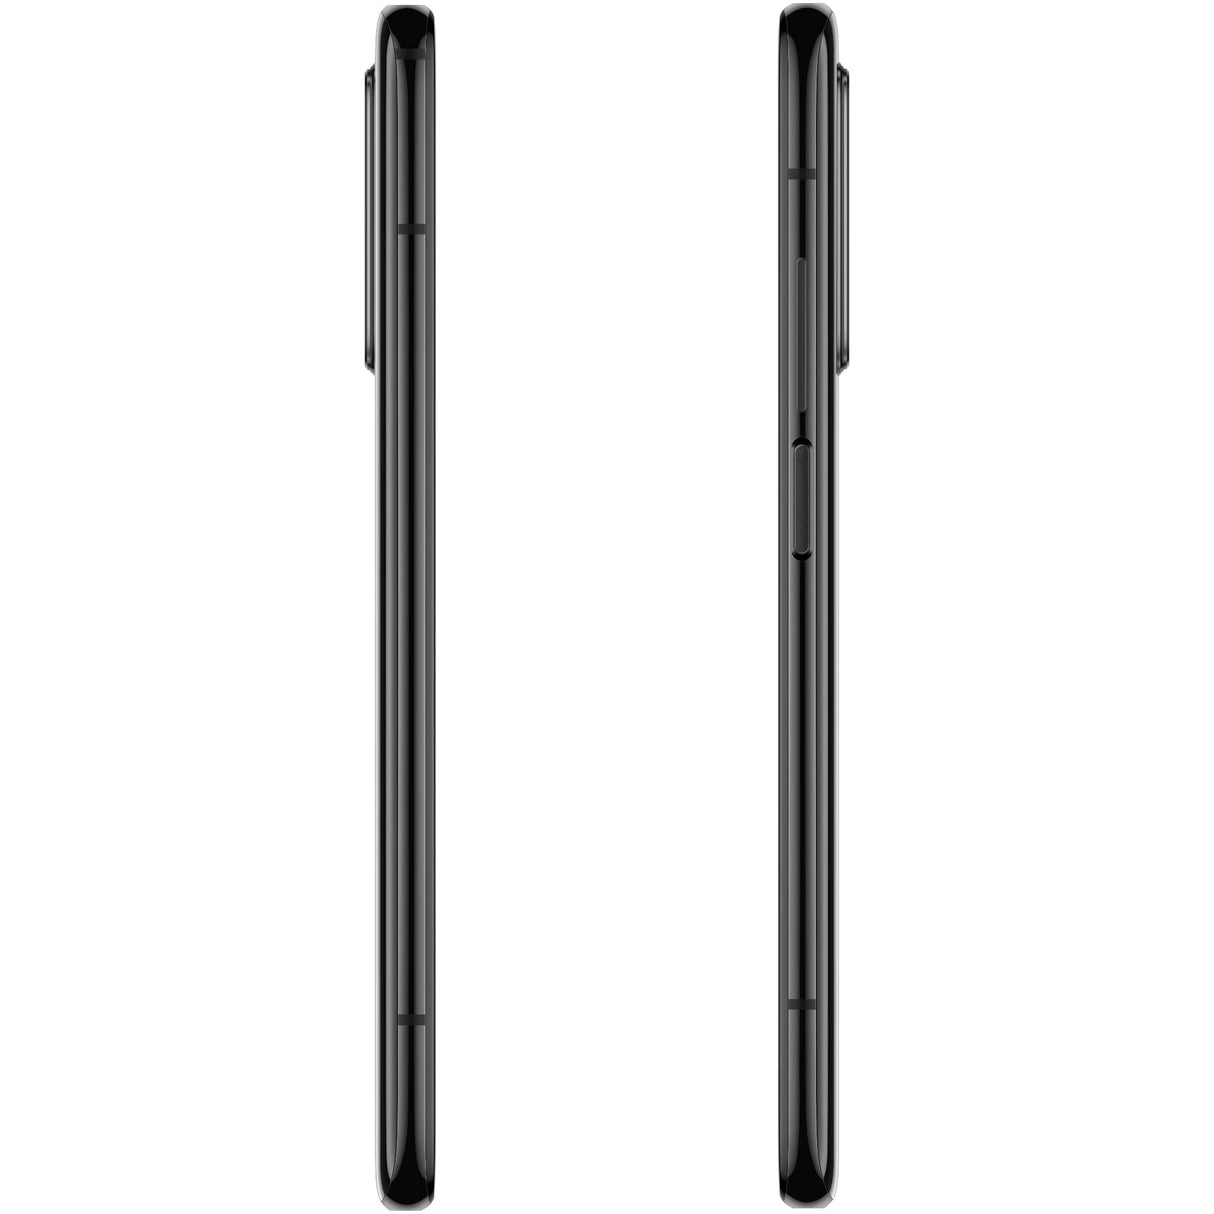 Telefon mobil second hand, Xiaomi Mi 10T Pro 5G, 8GB/128GB, Cosmic Black - NotebookGsm